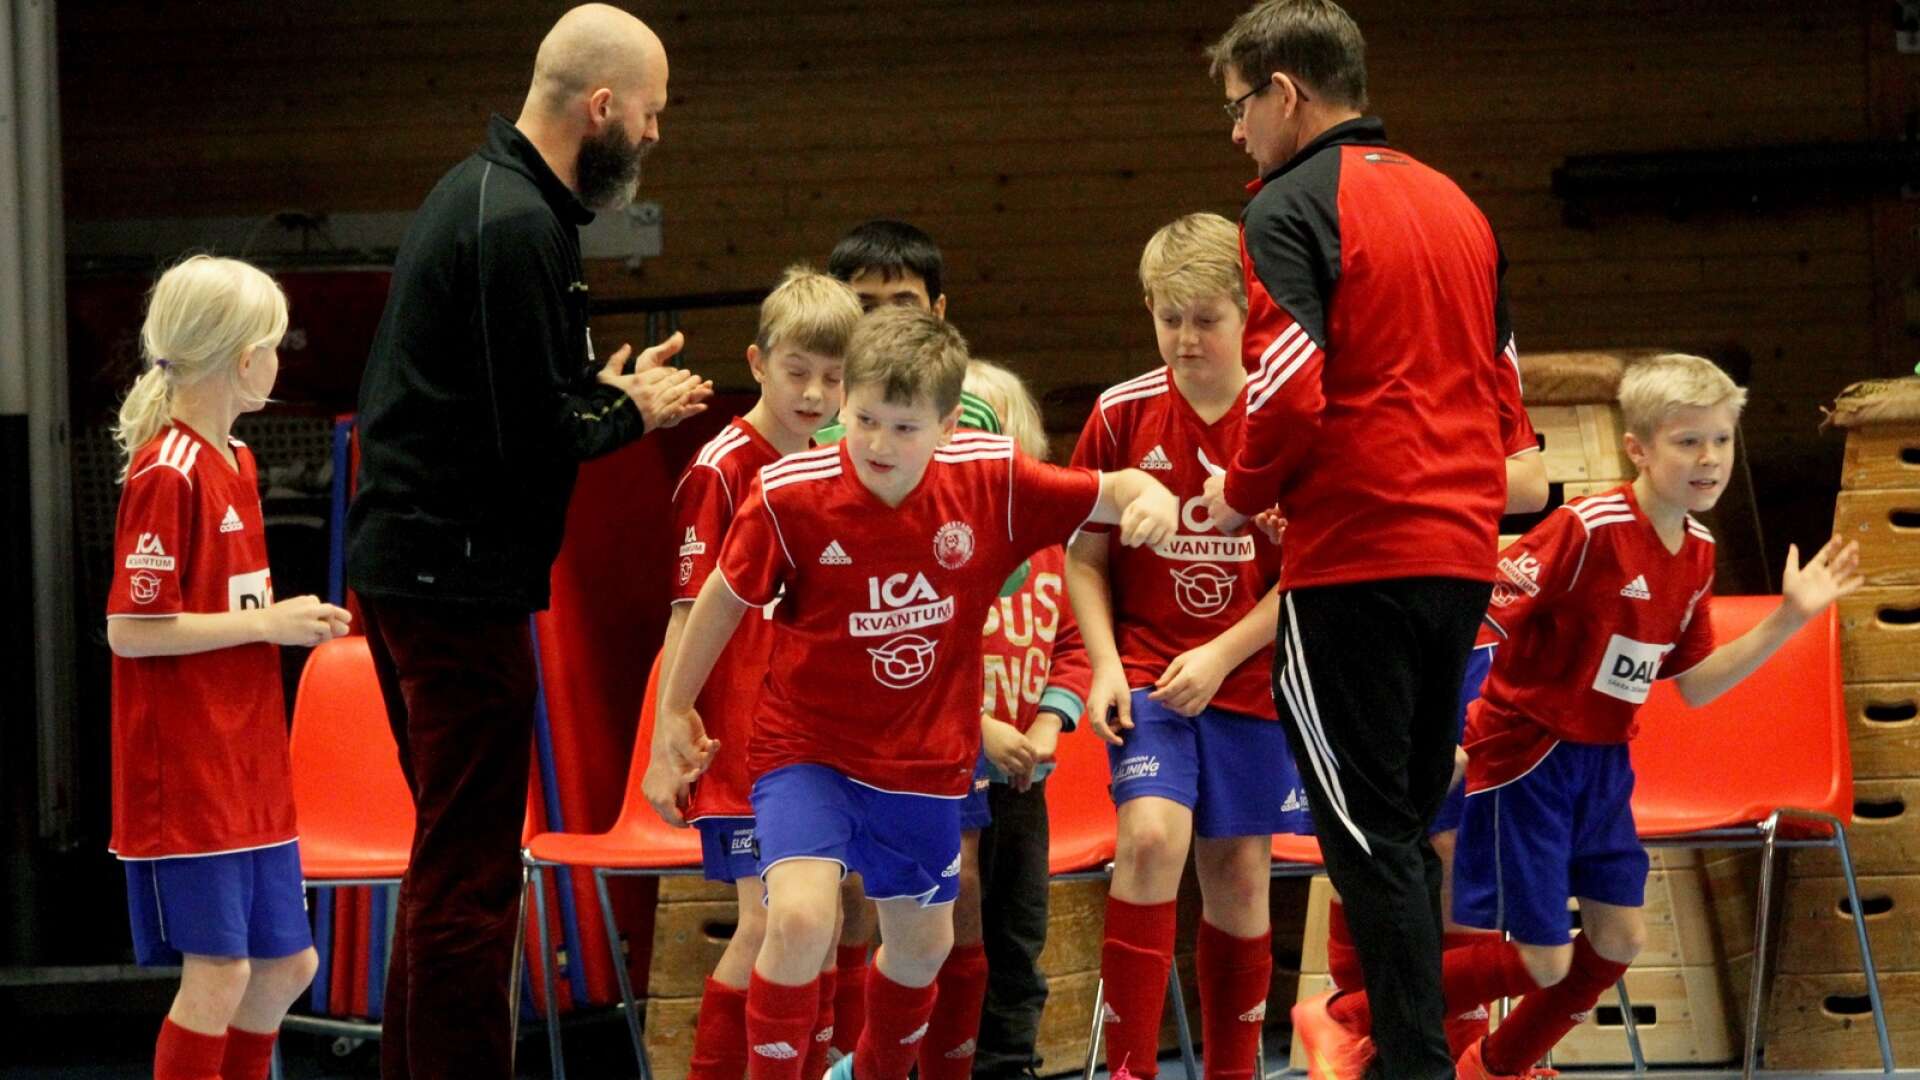 Denna vecka spelas juniorernas futsalturnering Norlanders futsal cup i Novab arena.